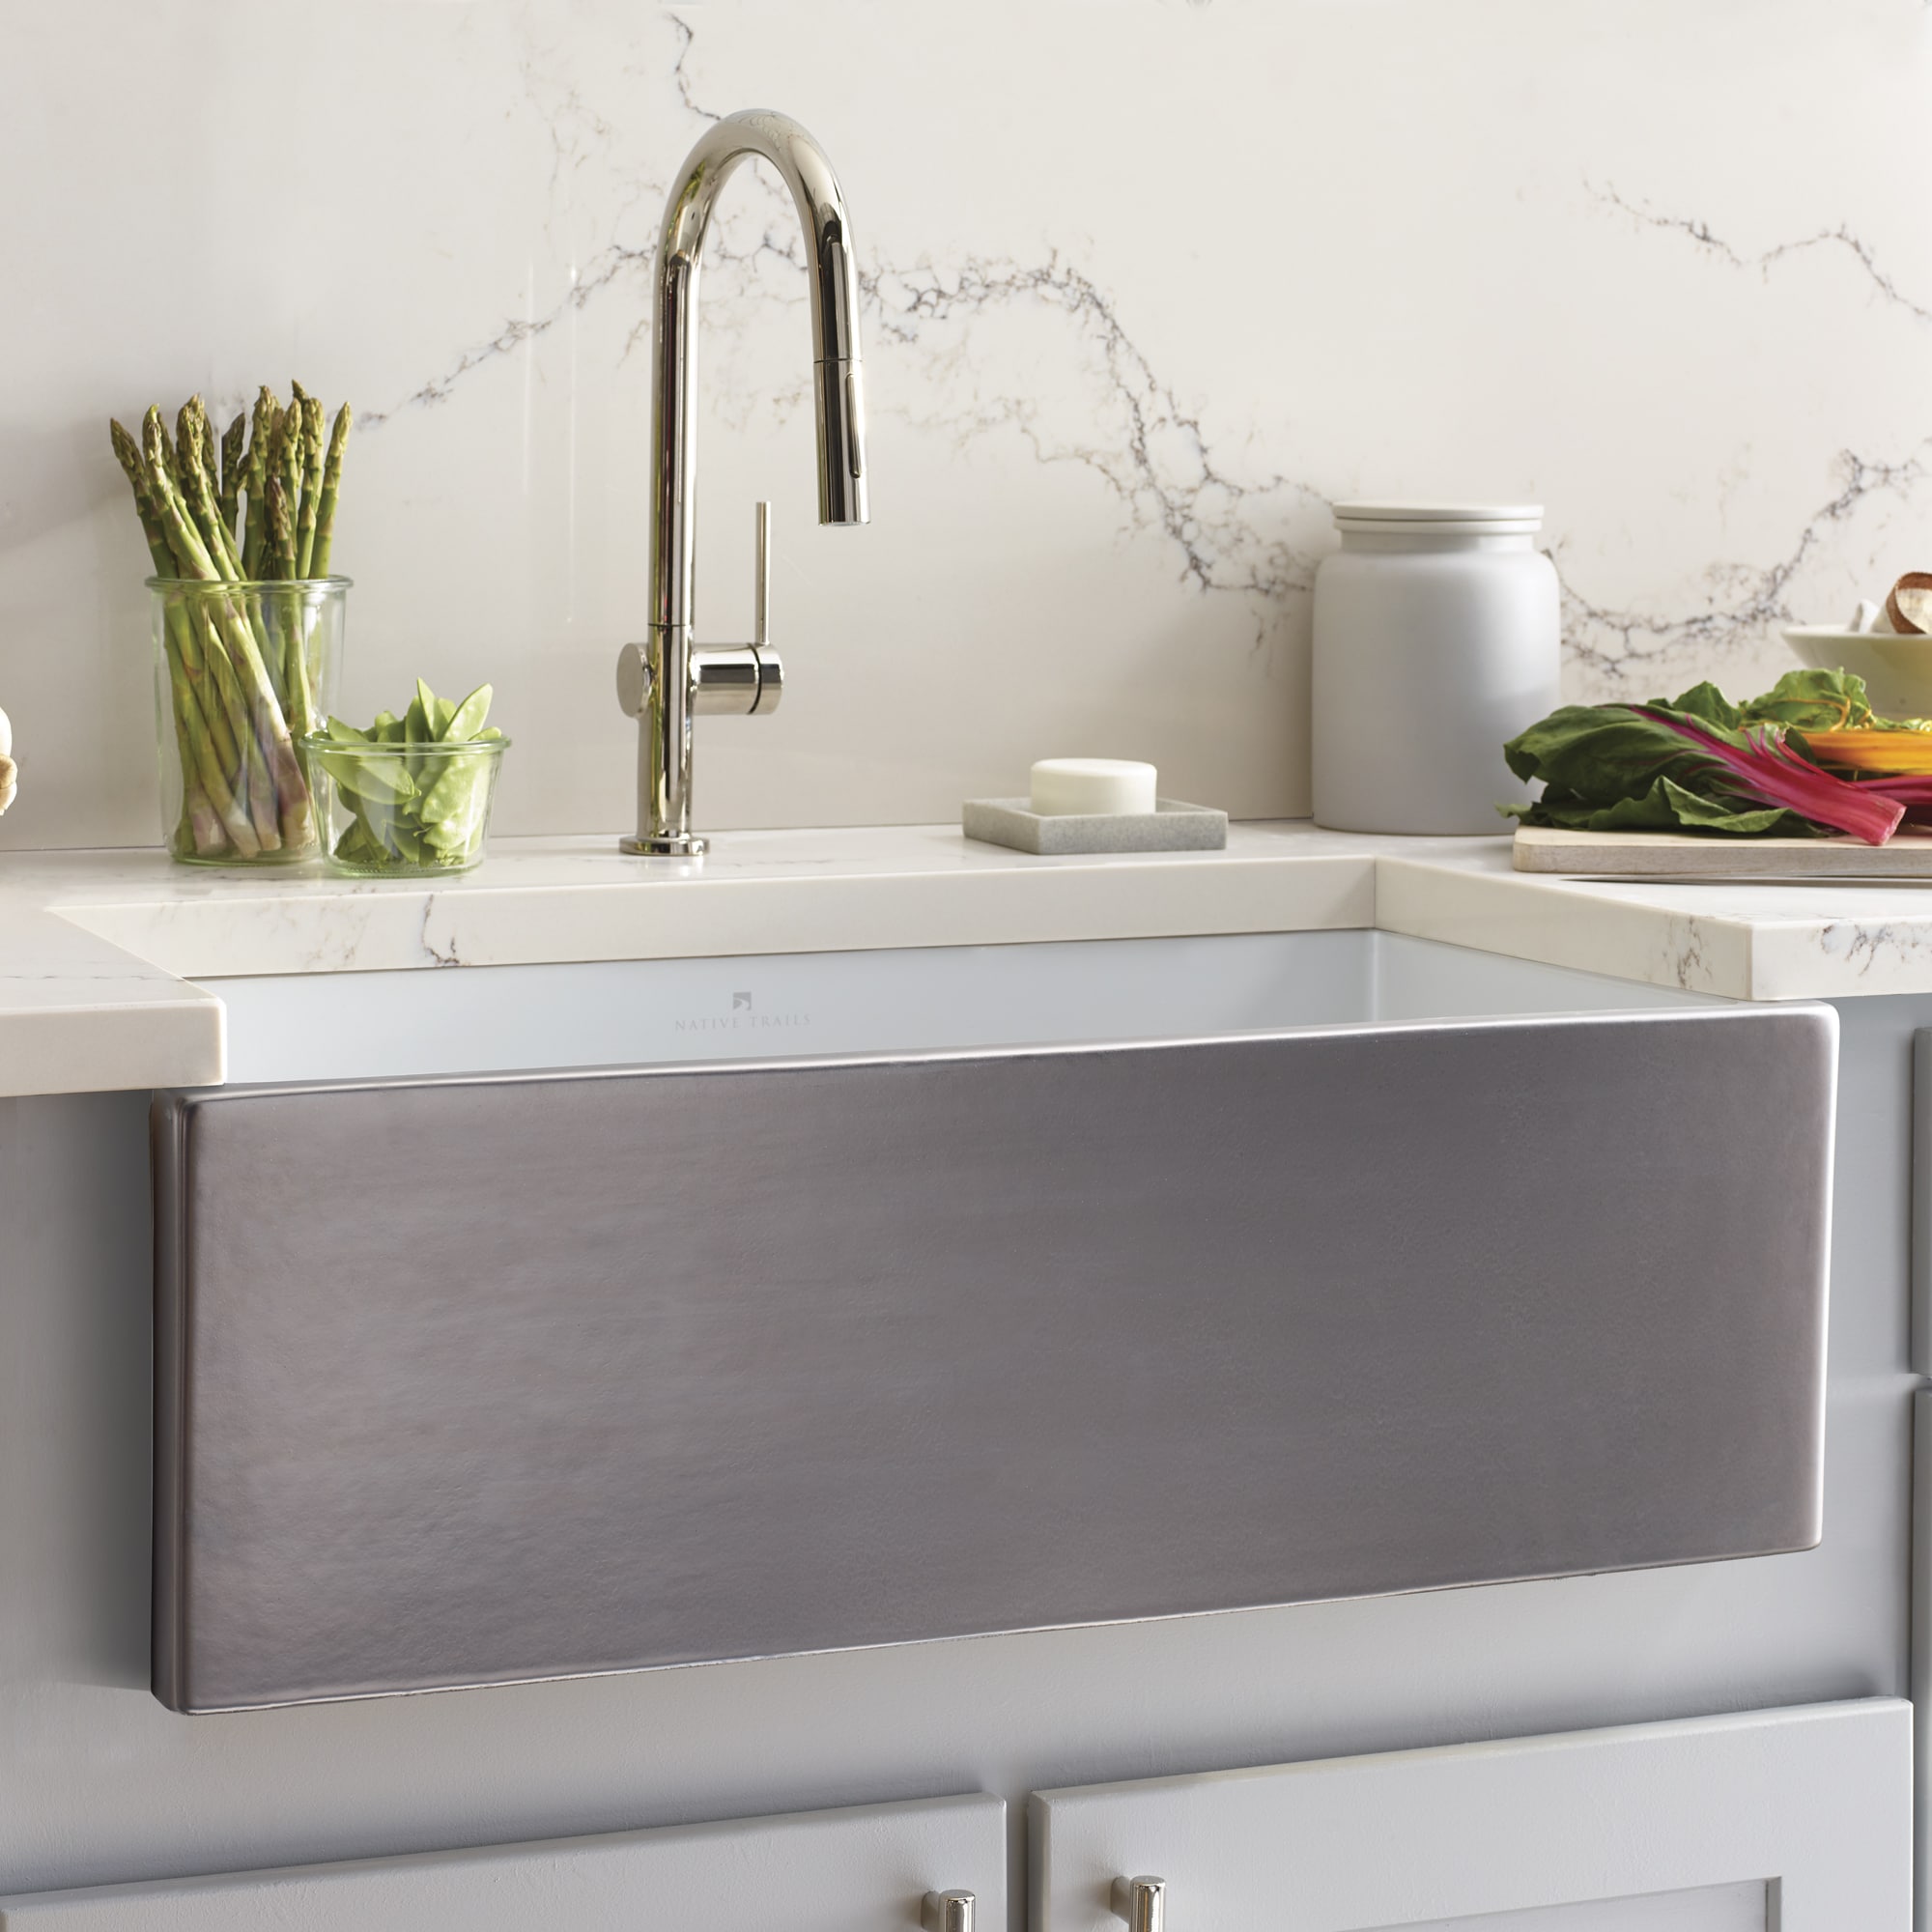 Dreamer Fireclay Kitchen Sink in Platinum (PMK3018-P)